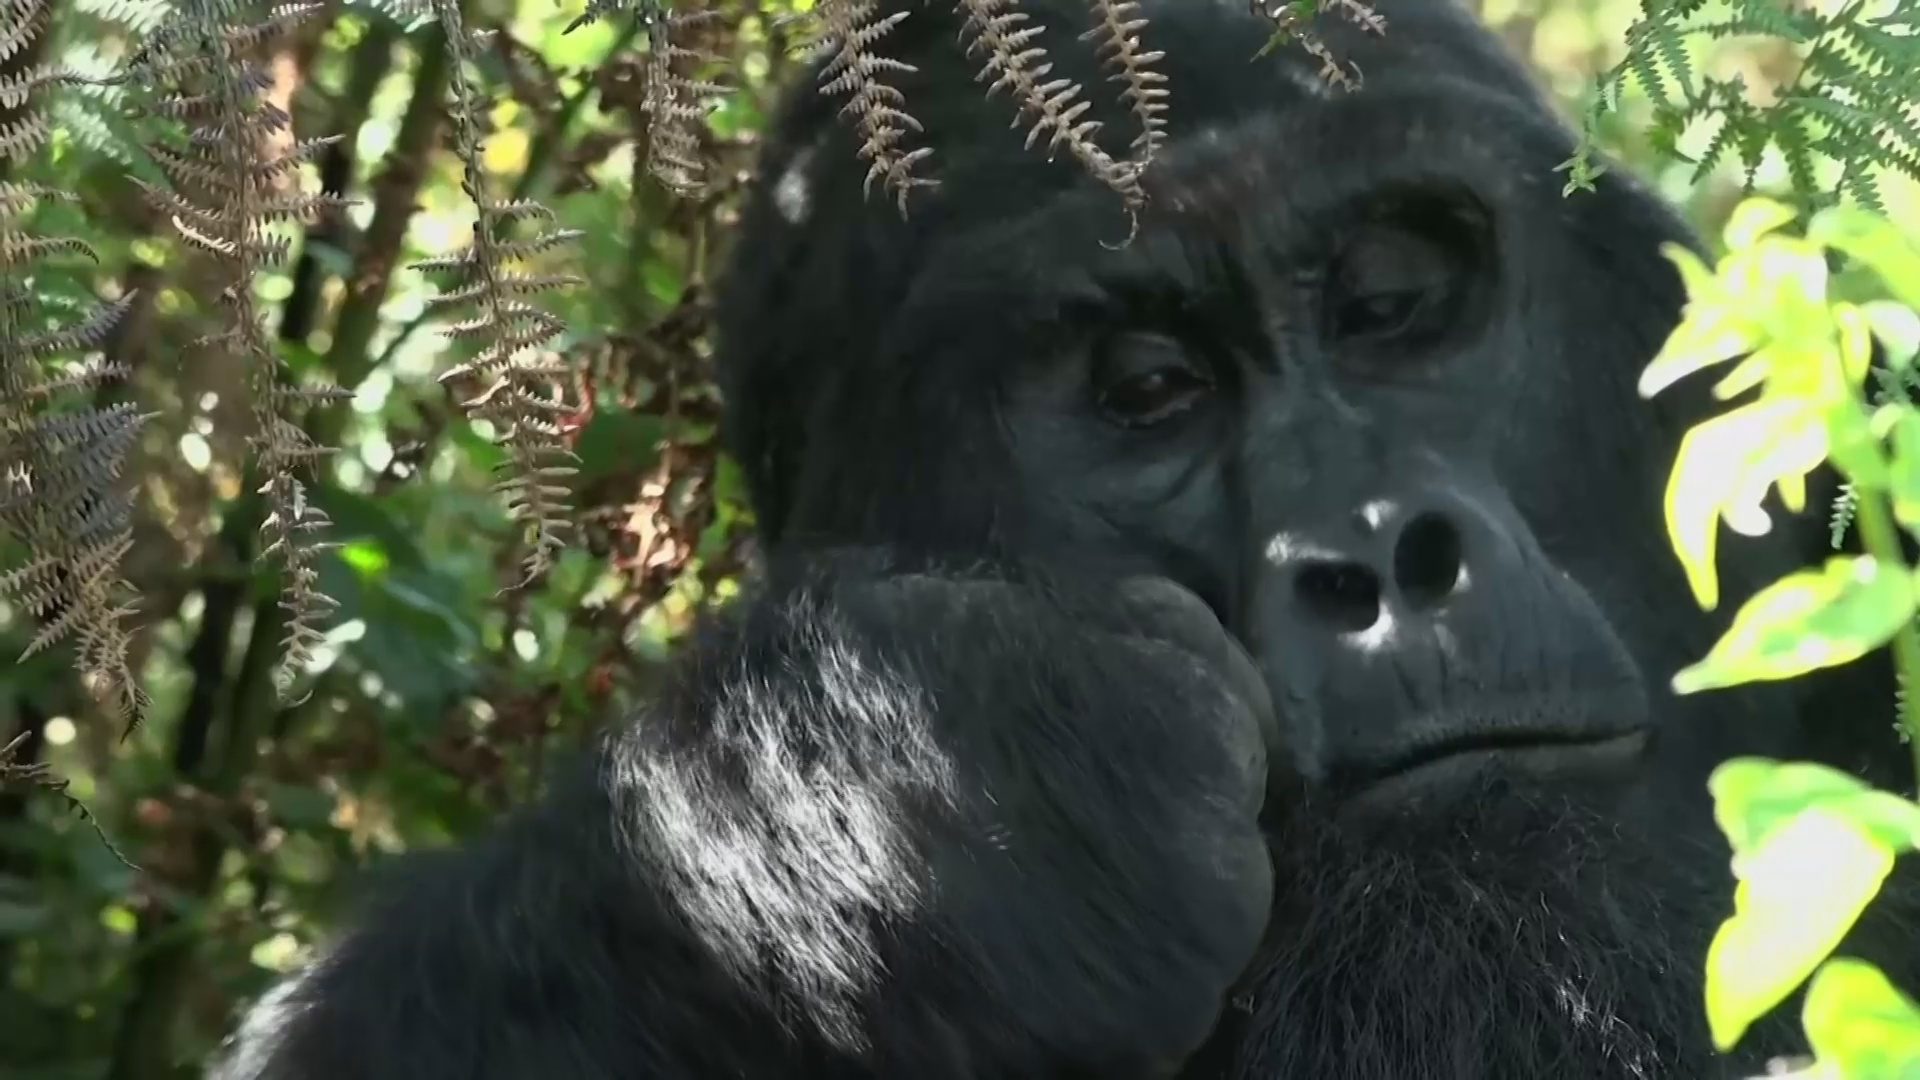 Как дети спасают горилл в ДР Конго